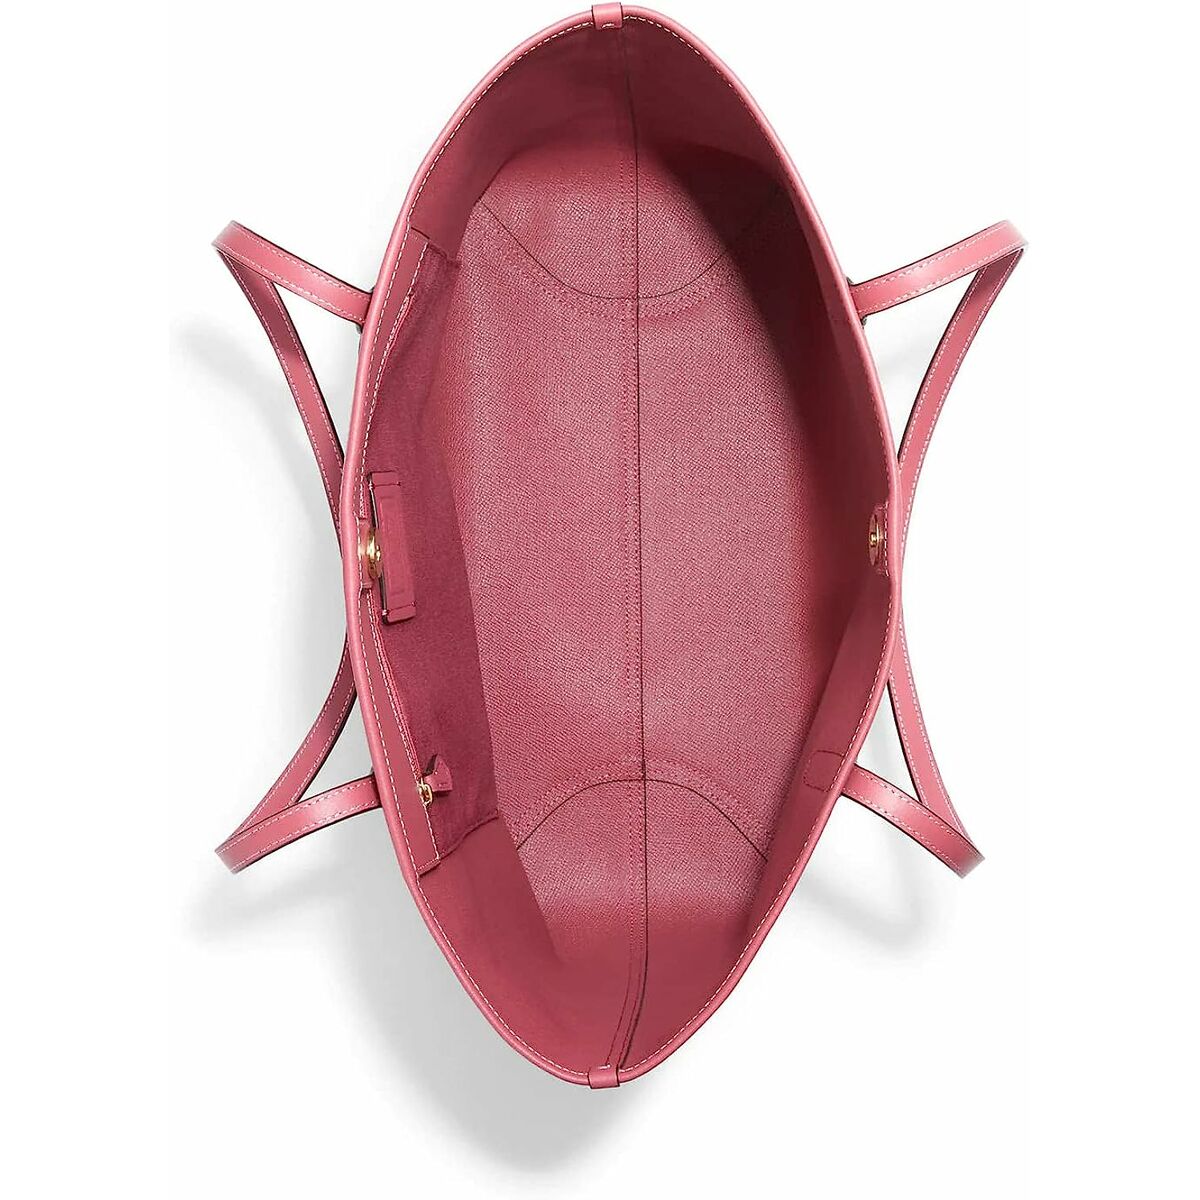 Women's Handbag Coach CF342-IMROU Pink 48 x 28 x 15 cm